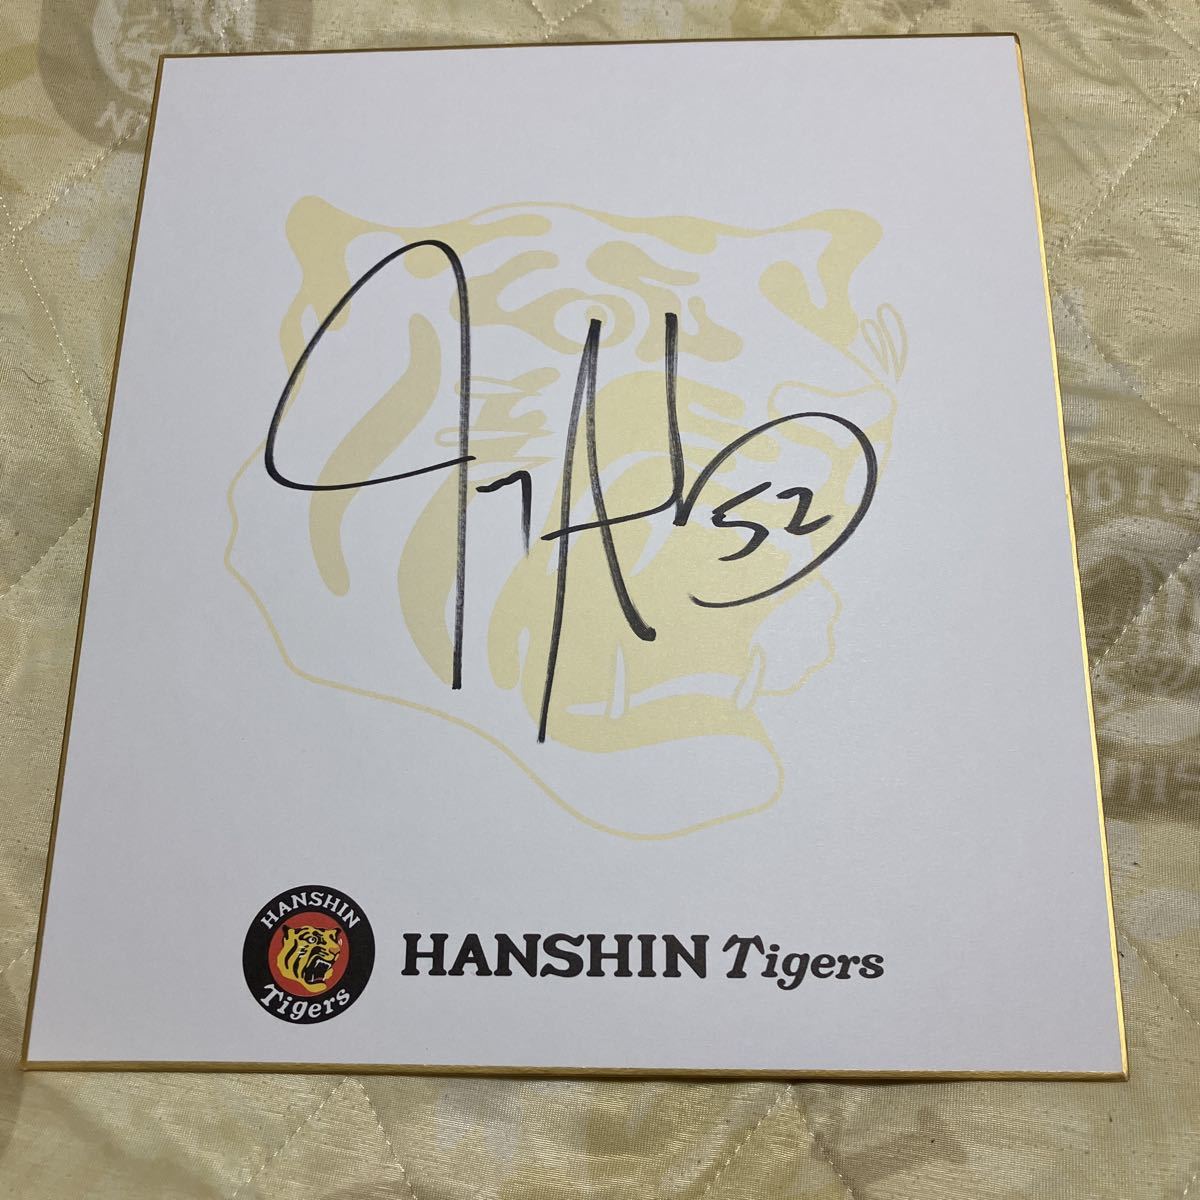 Hanshin Tigers Sands signiertes farbiges Papier Offizielles Team nicht zum Verkauf farbiges Papier, Baseball, Souvenir, Ähnliche Artikel, Zeichen